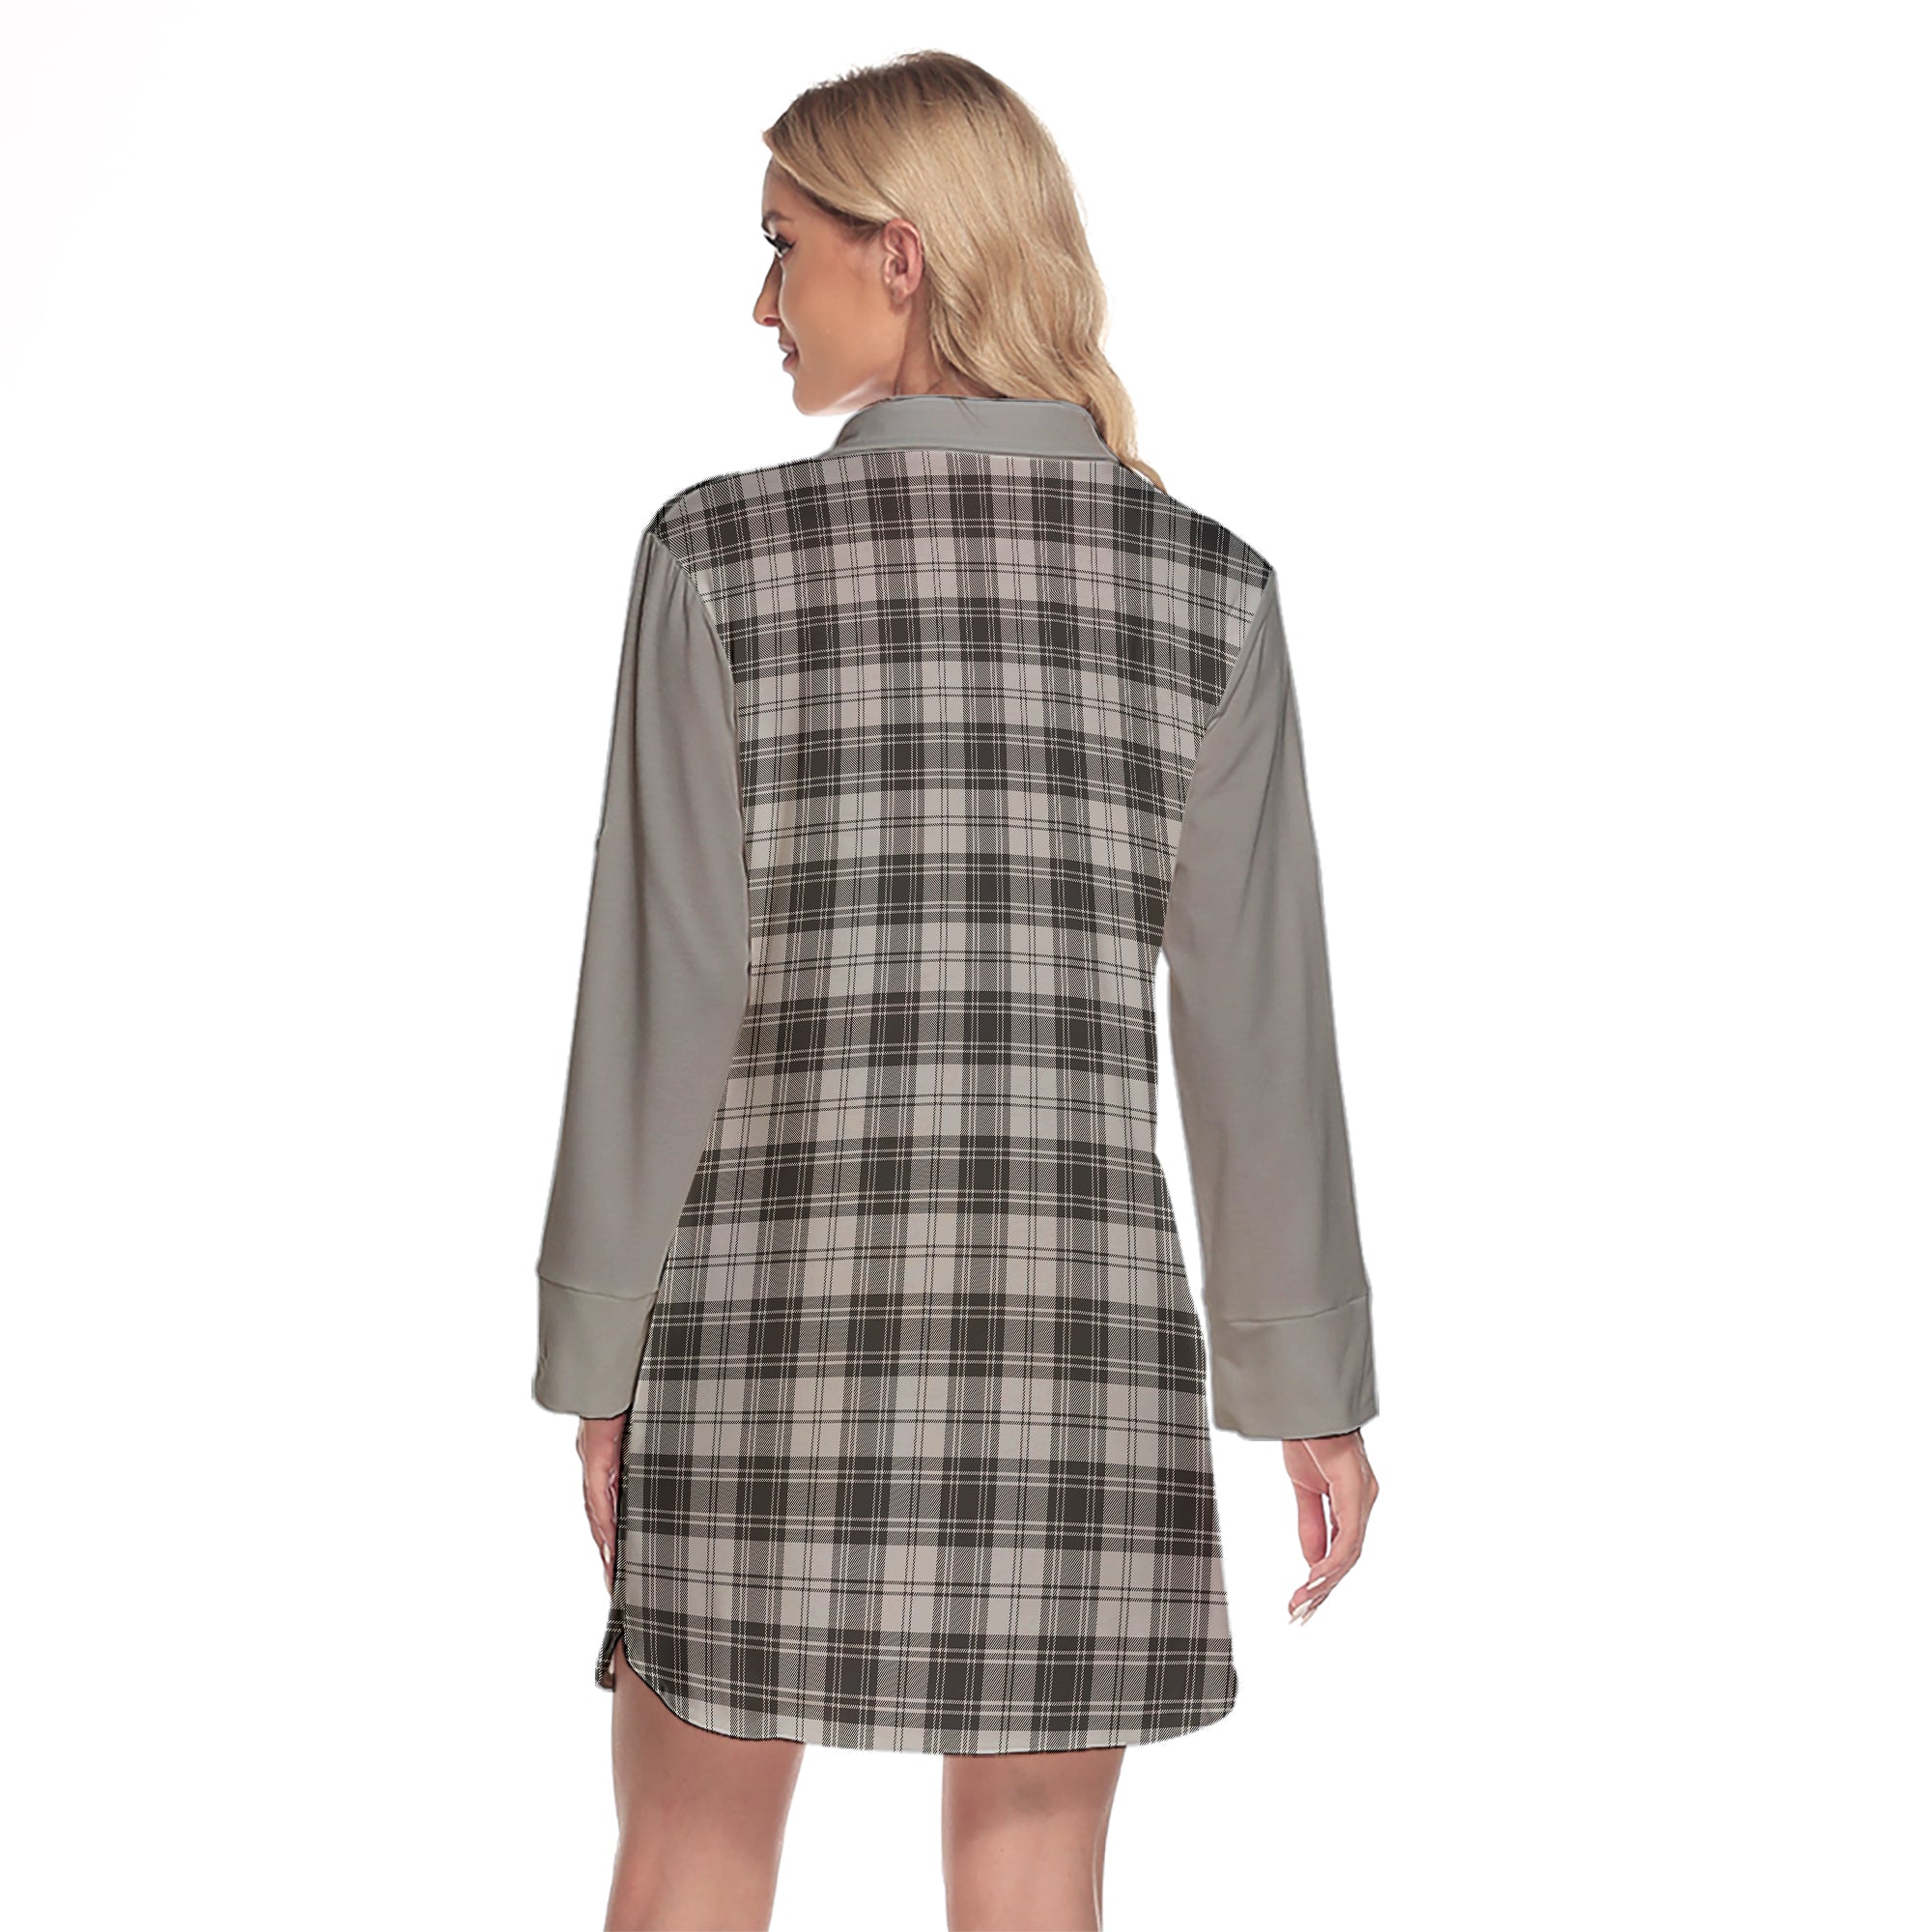 Douglas Grey Modern Tartan Women's Lapel Shirt Dress With Long Sleeve